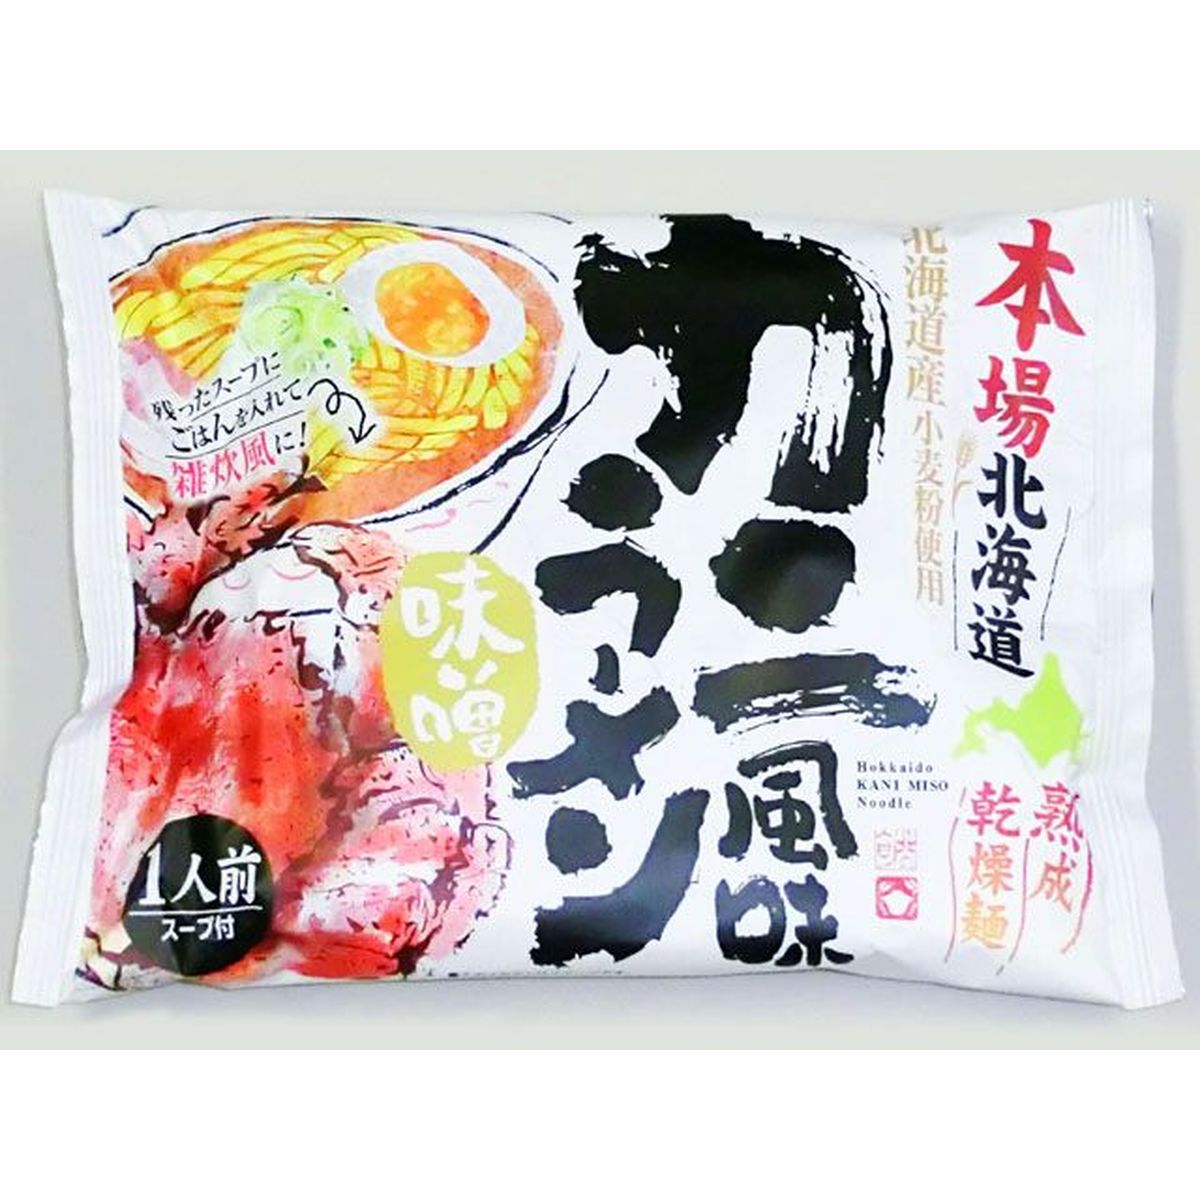 【10個入リ】藤原製麺 本場北海道カニ風味ラーメン味噌 101g